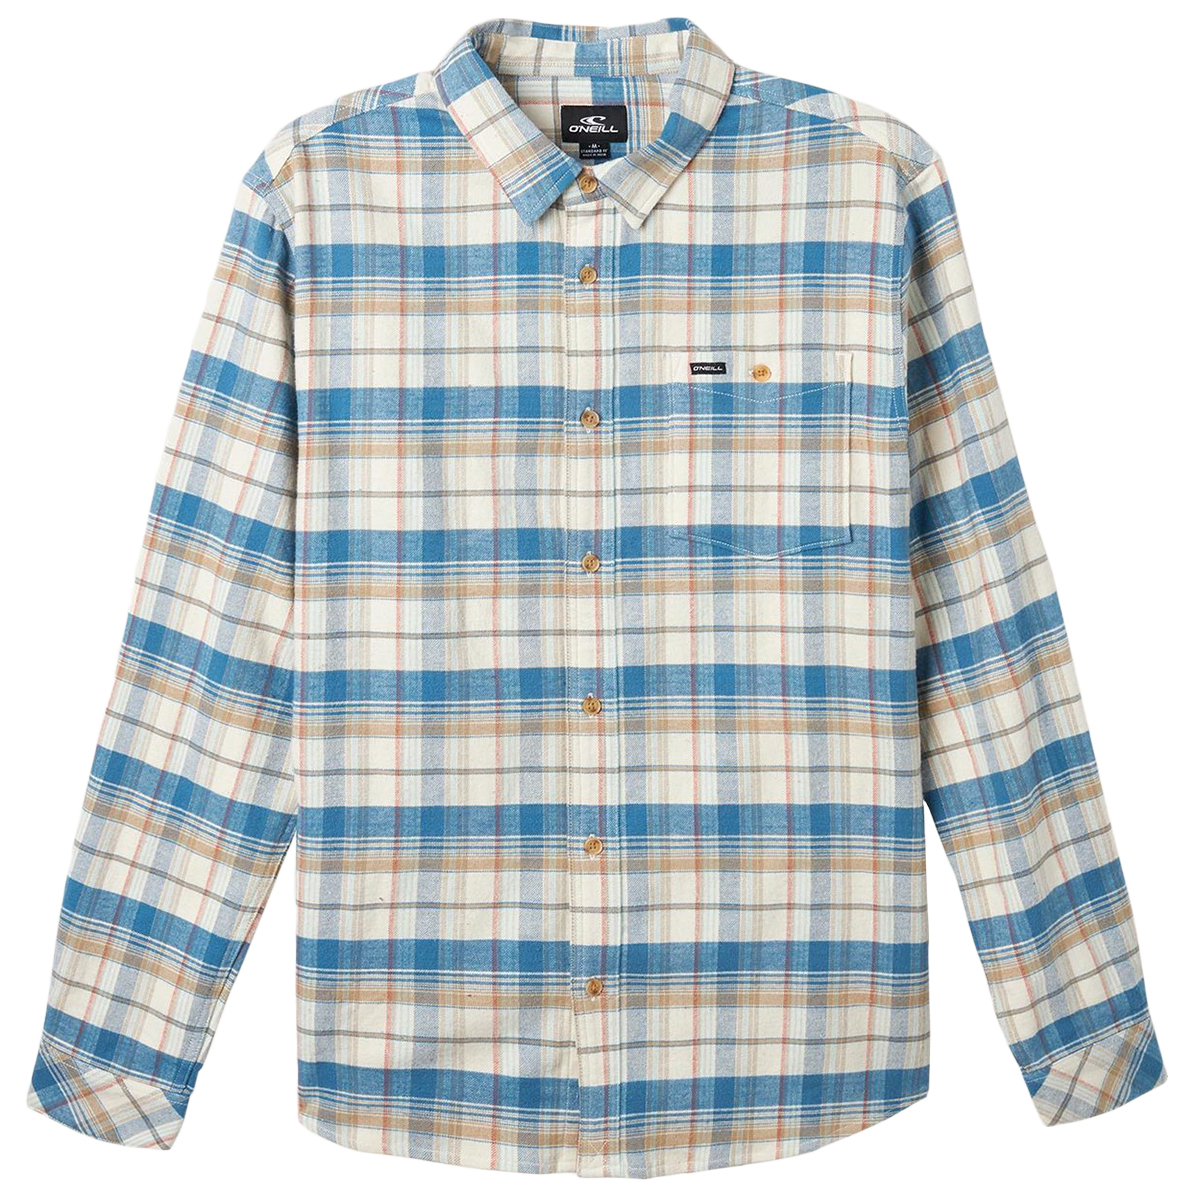 O'neill Guys' Redmond Stretch Flannel Shirt